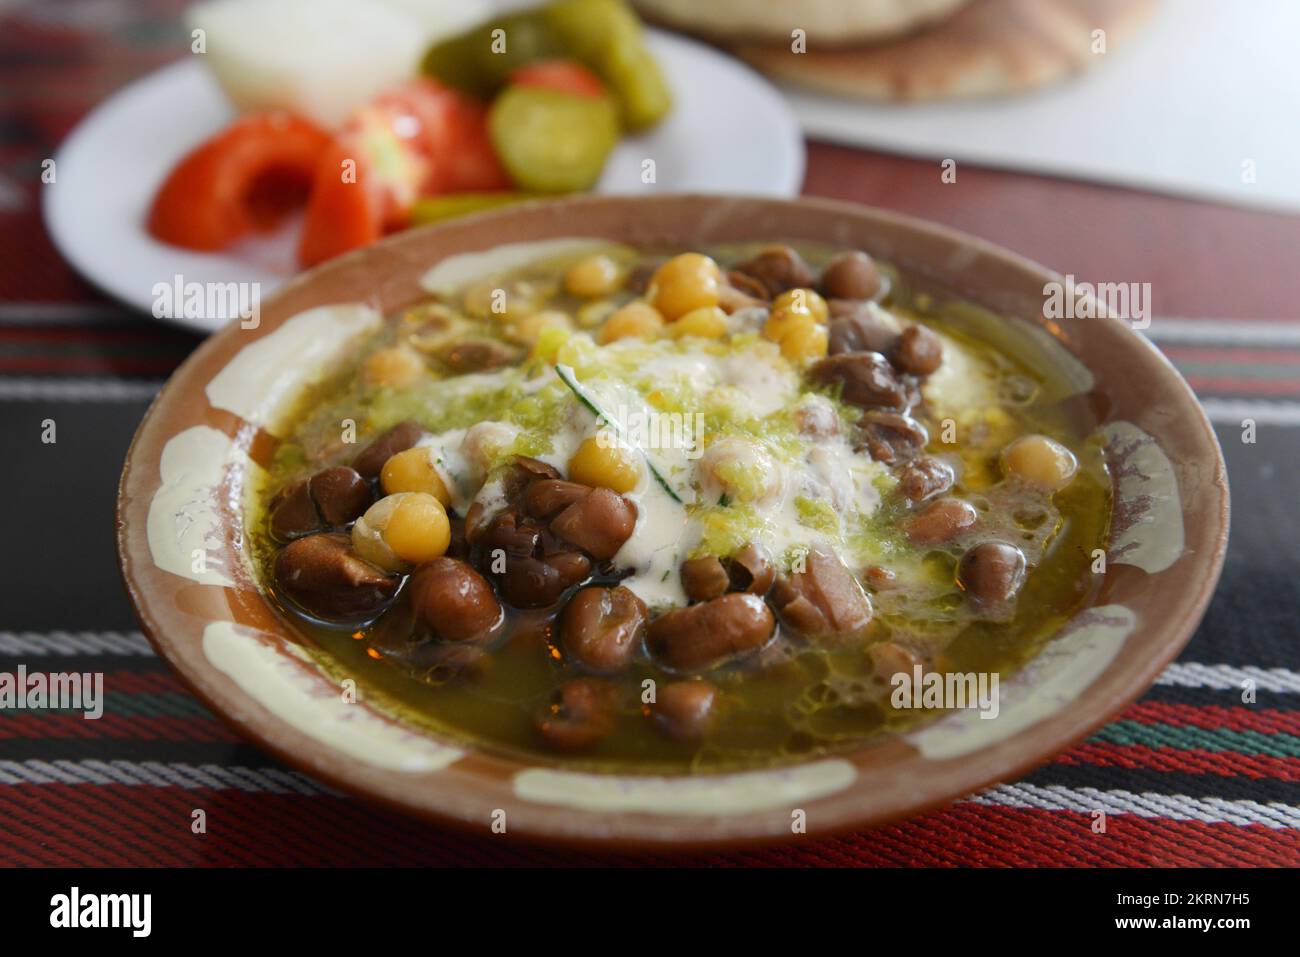 Hummus avec Fuul ( Pful), un aliment de base populaire au Moyen-Orient. Restaurant Abu Kamel dans le quartier chrétien de la vieille ville de Jérusalem. Banque D'Images